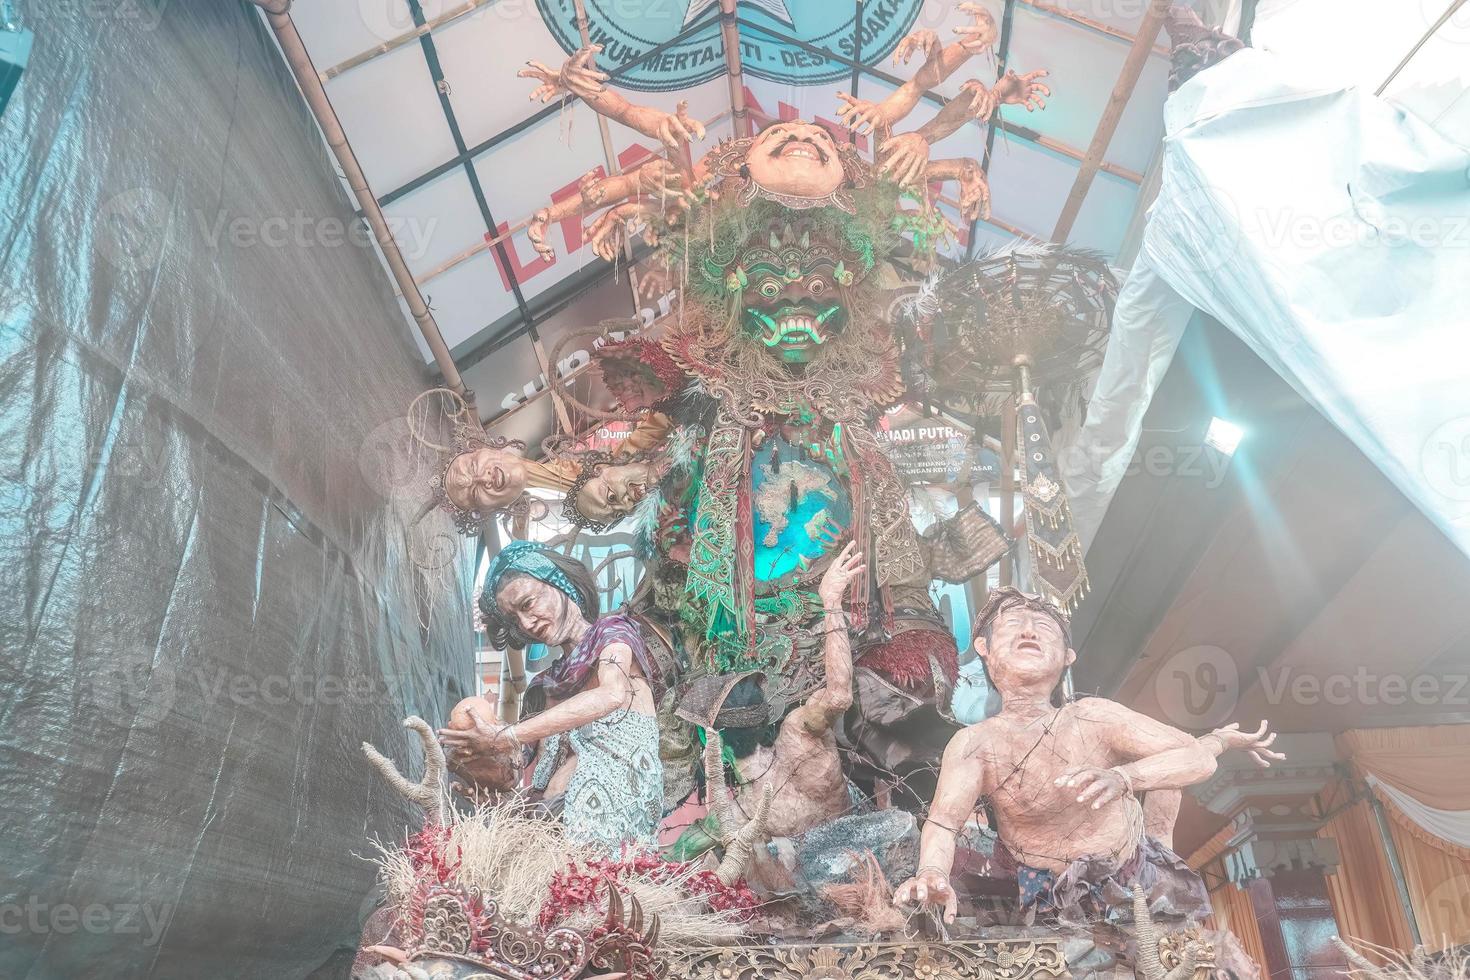 ogoh-ogoh est une balinais traditionnel géant fantoche fabriqué de bambou et papier maché, représentant mal esprits. c'est défilé autour avant le nyepi journée à quartier de négativité. photo